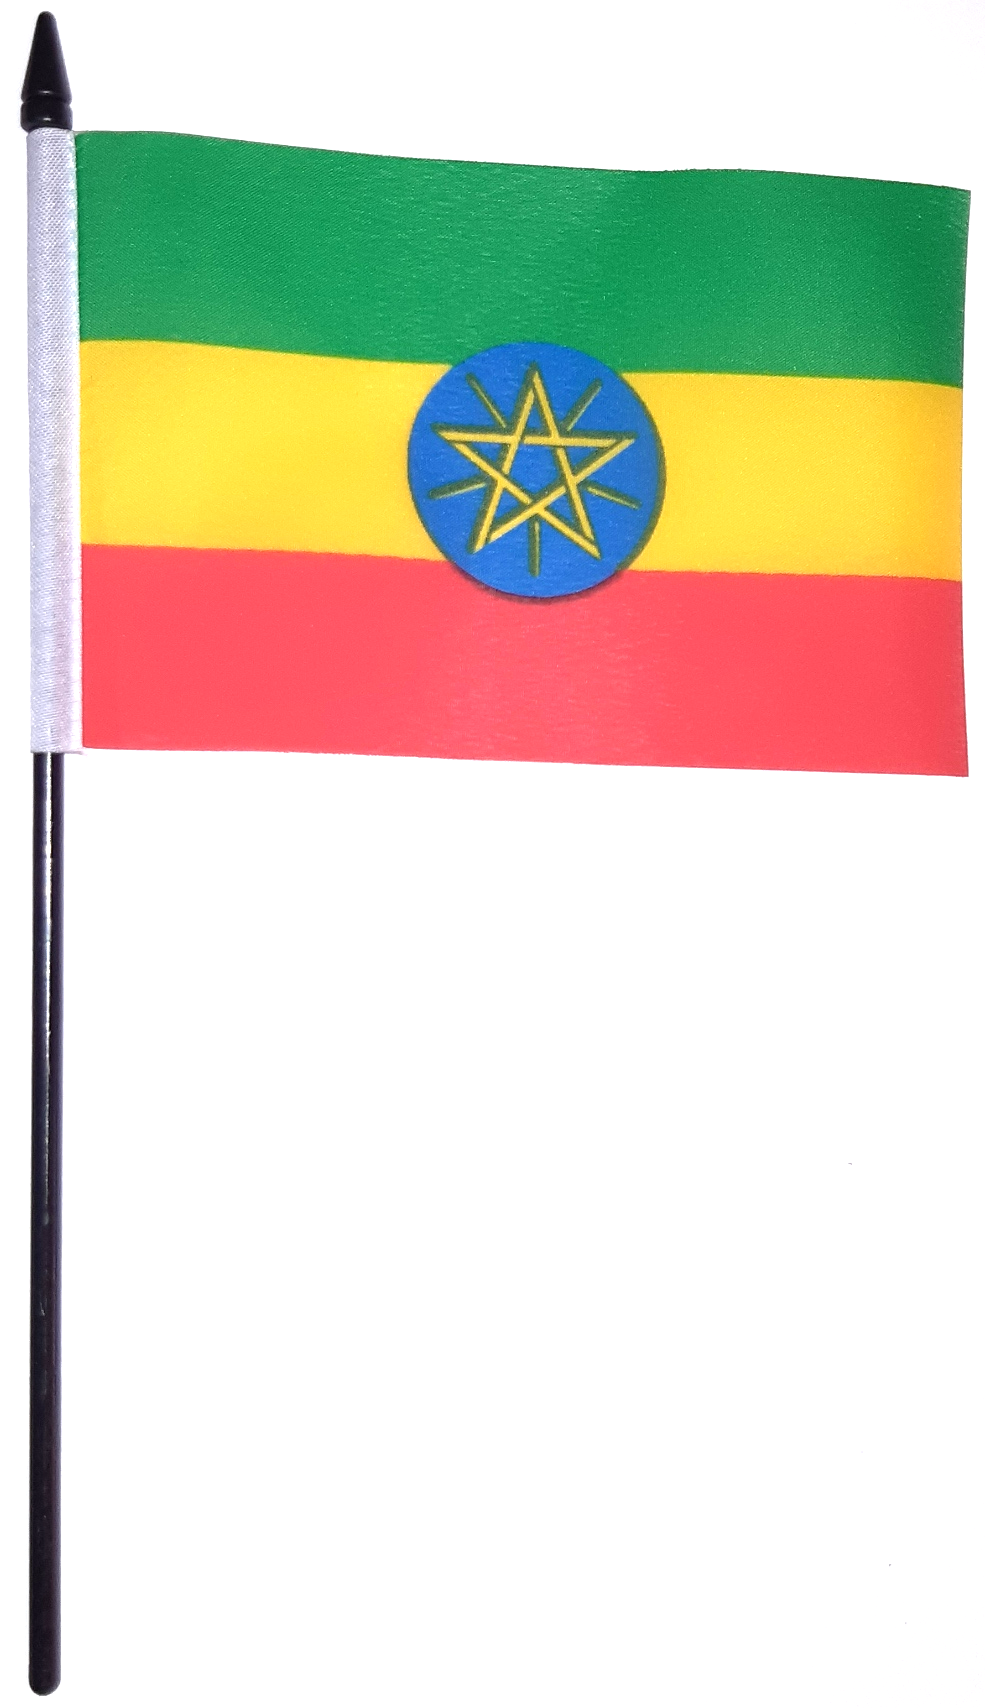 ETIOPIEN HANDFLAGGA PENTAGRAM 23X15CM